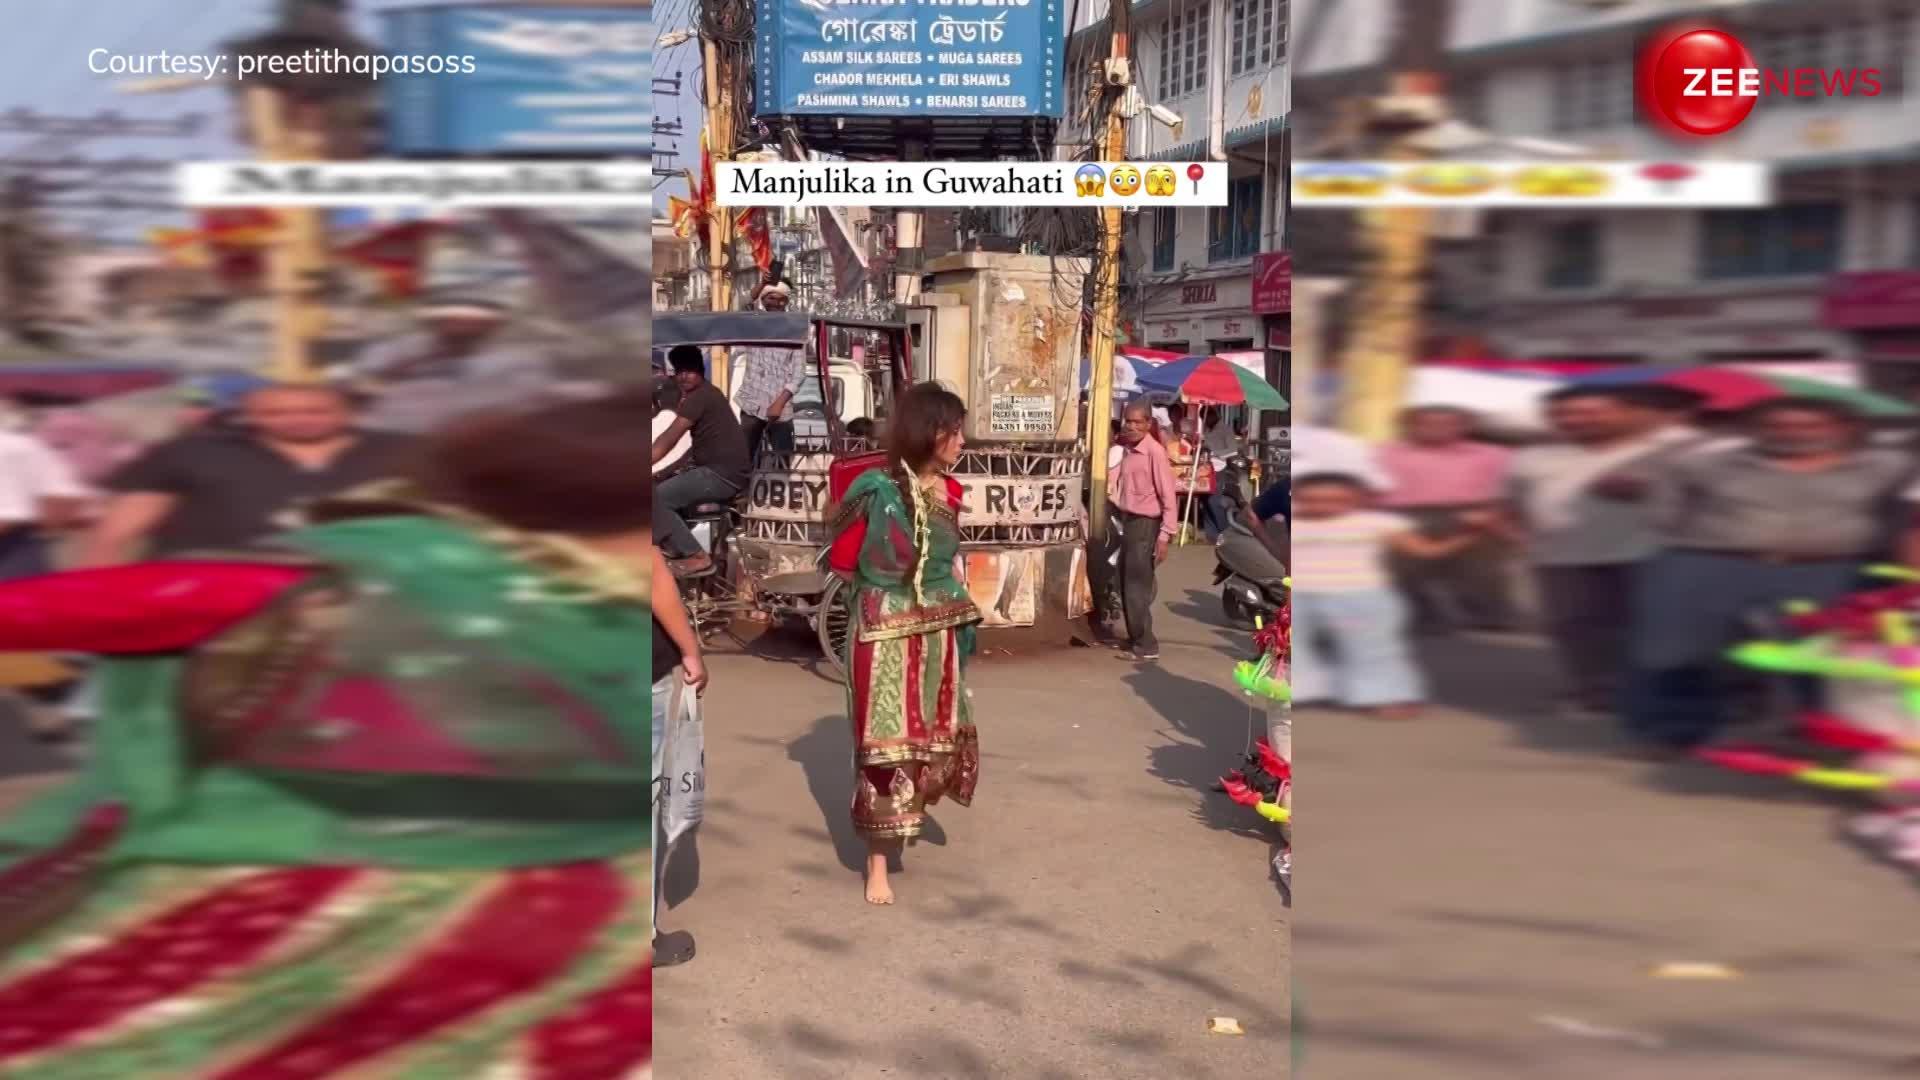 'आमी जे तोमार' गाने पर बीच बाजार में डांस करती दिखी मंजुलिका, वीडियो देख हैरान रह गए लोग